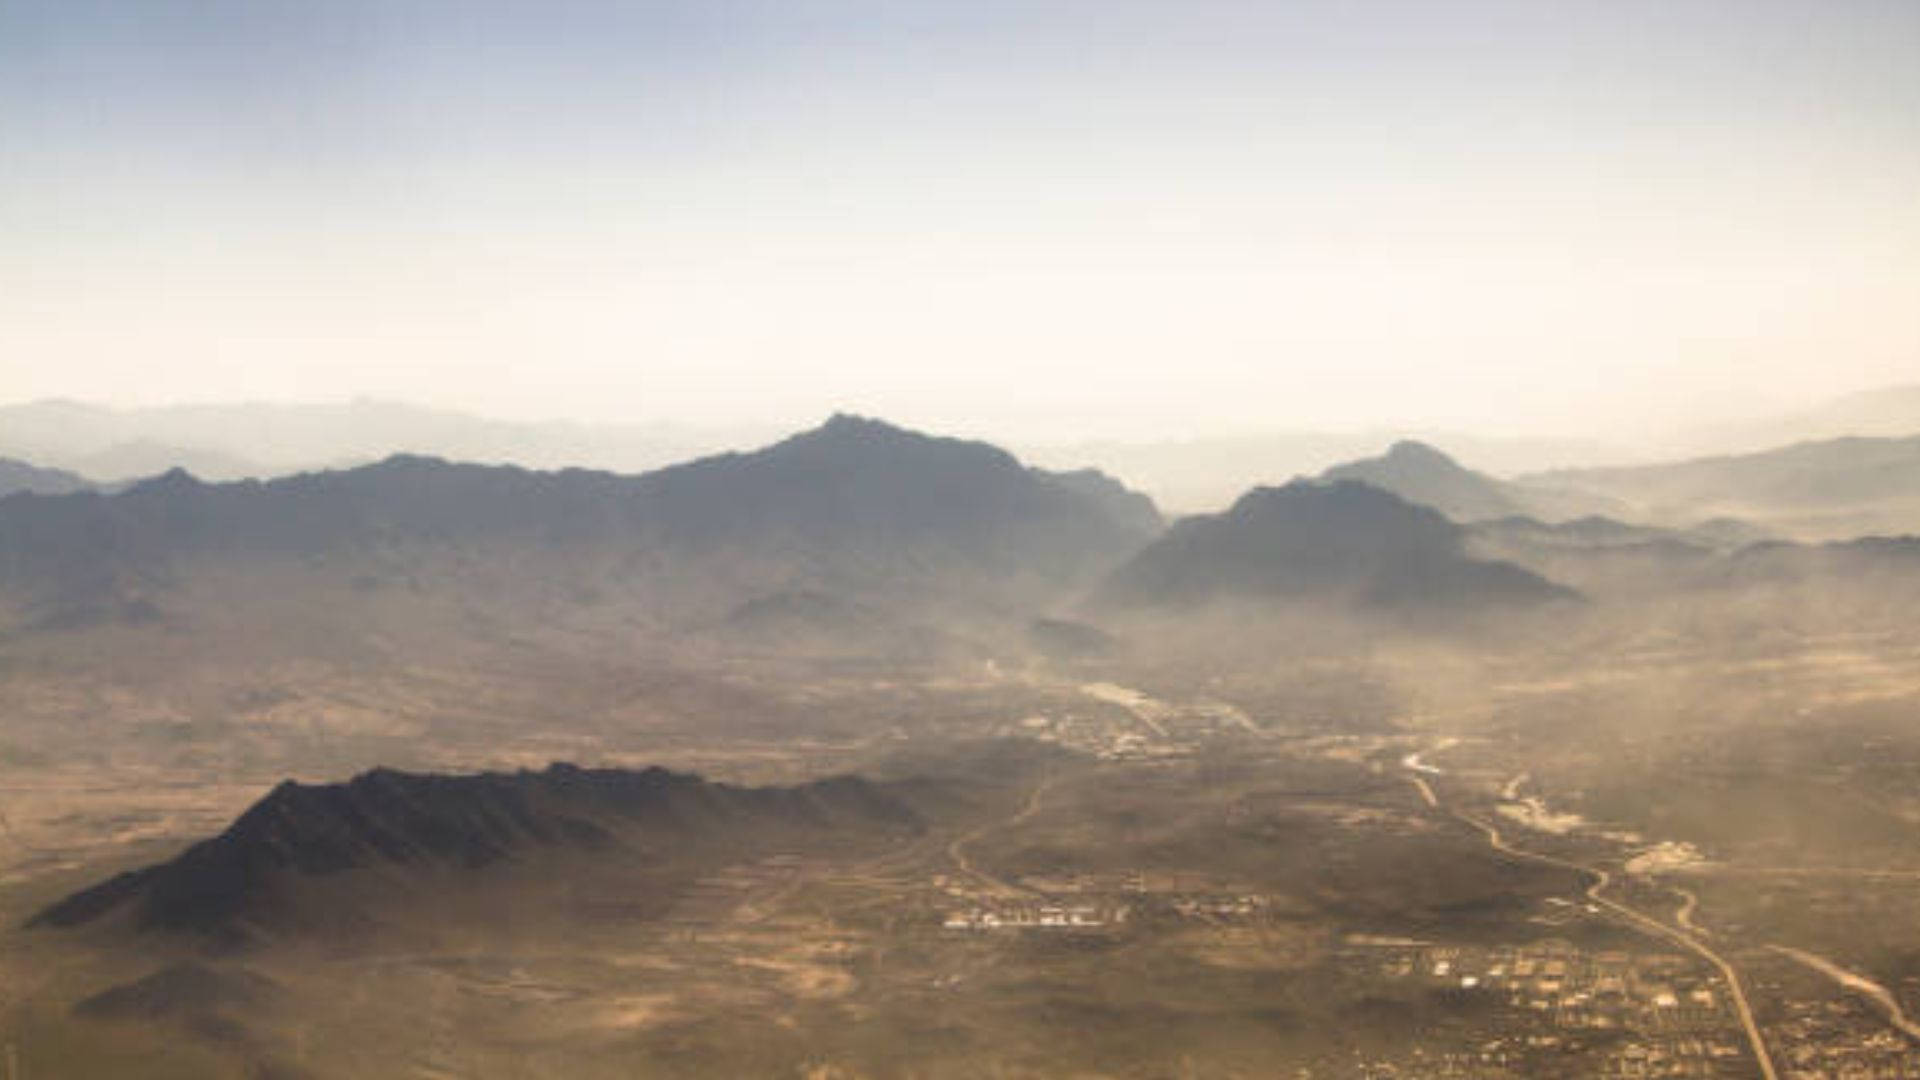 Vistaaérea De La Ciudad De Kabul Fondo de pantalla